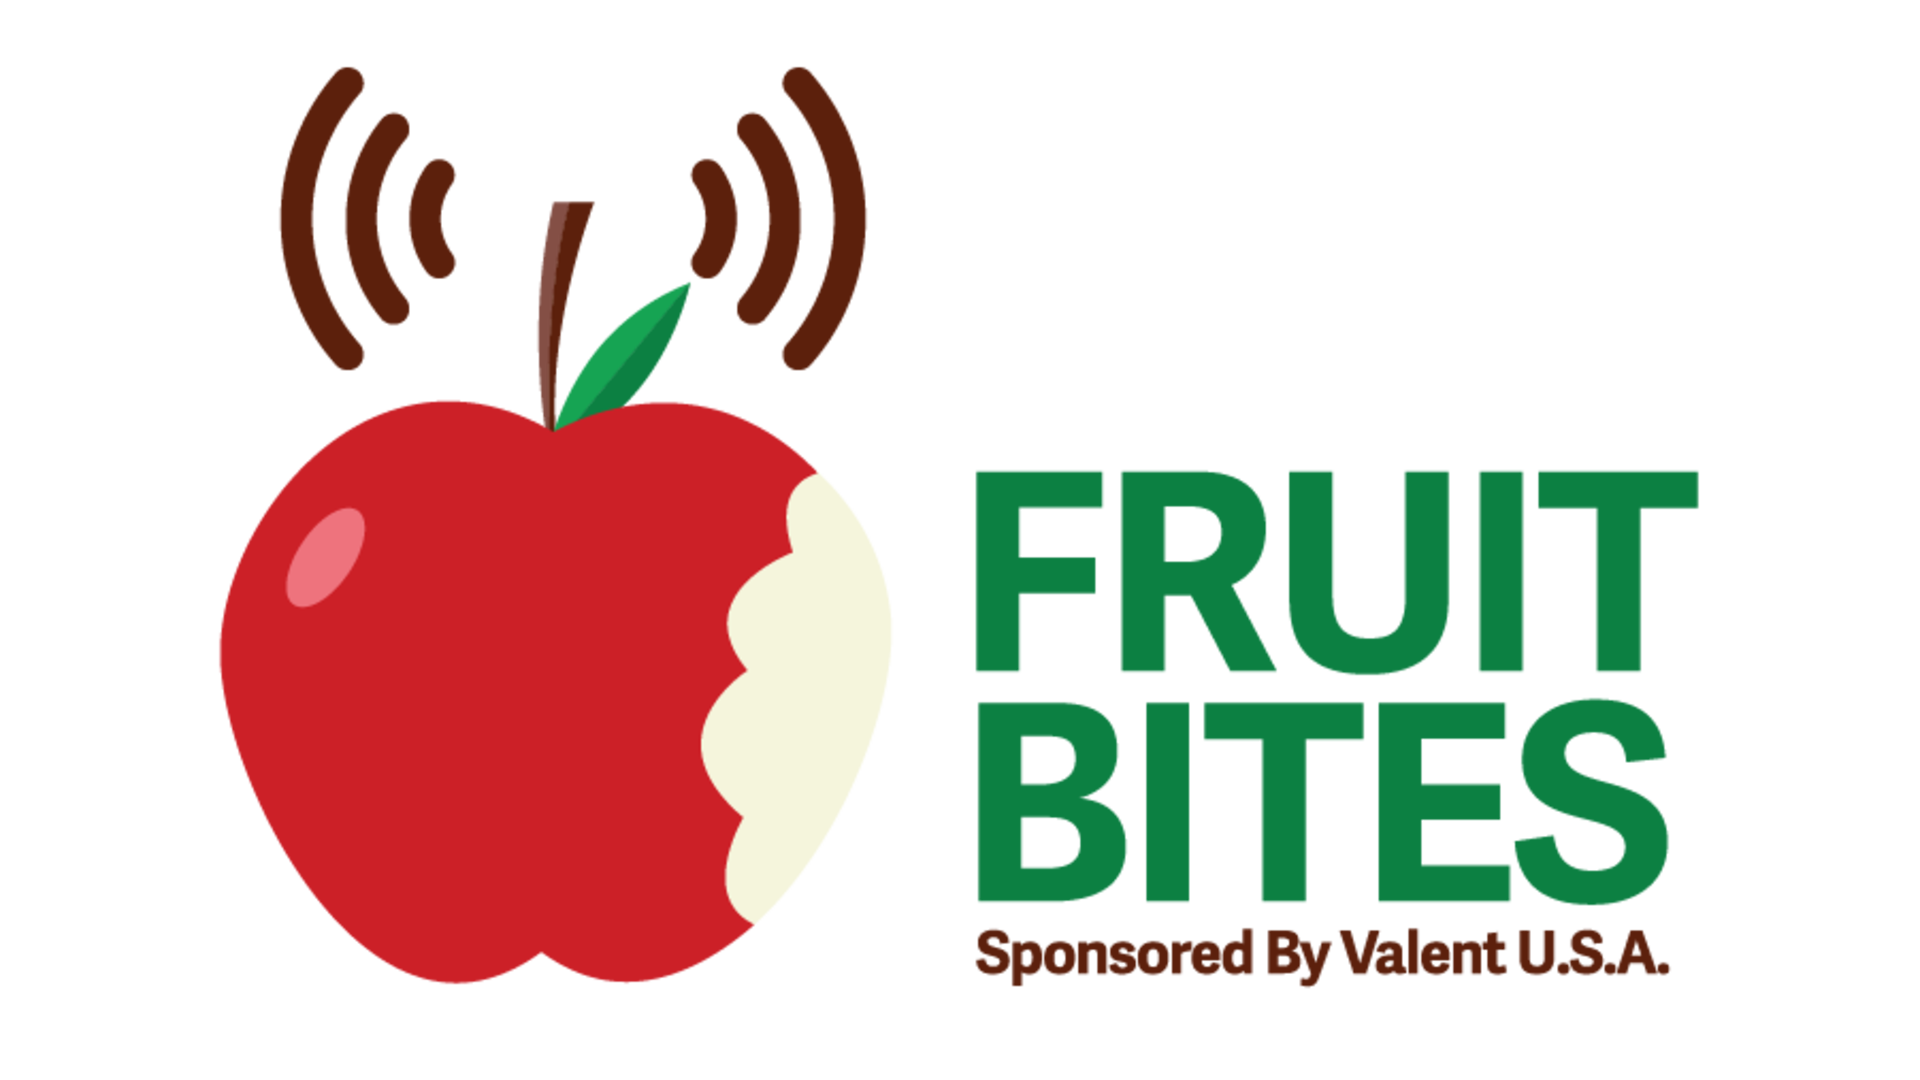 Fruit Bites for July 12-14 ... Sunburn Prevention